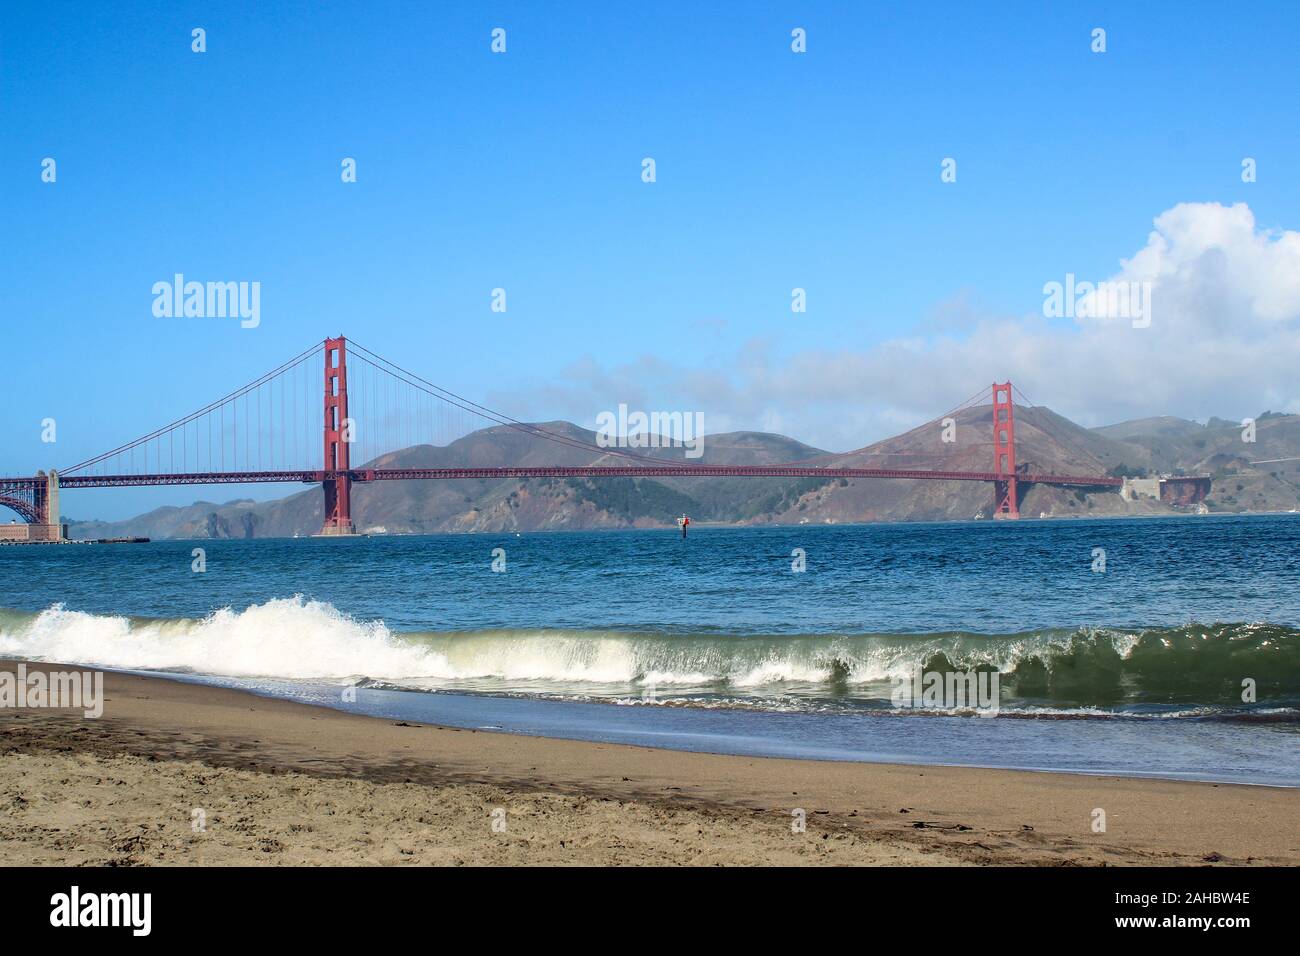 Arancione internazionale Golden Gate Bridge con onde che si infrangono sulla Crissy Field area ricreativa spiaggia di fronte. San Francisco, Stati Uniti. Foto Stock